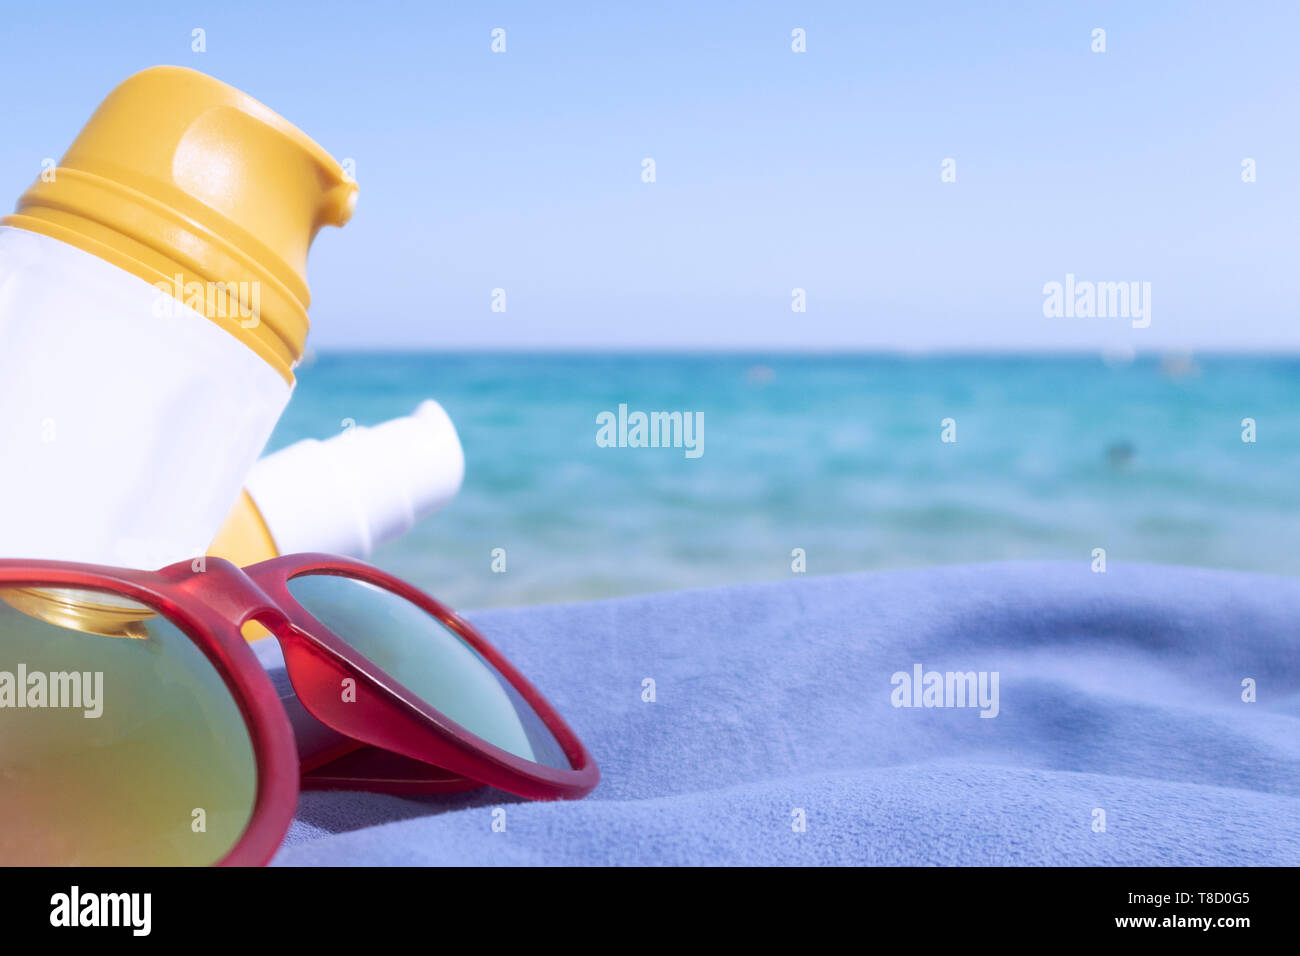 Les crèmes solaires pour l'été. sun protection contre les coups de soleil. L'hydratation et les soins personnels sur la plage. bouteilles de crème pour la peau. Aller à la plage Banque D'Images